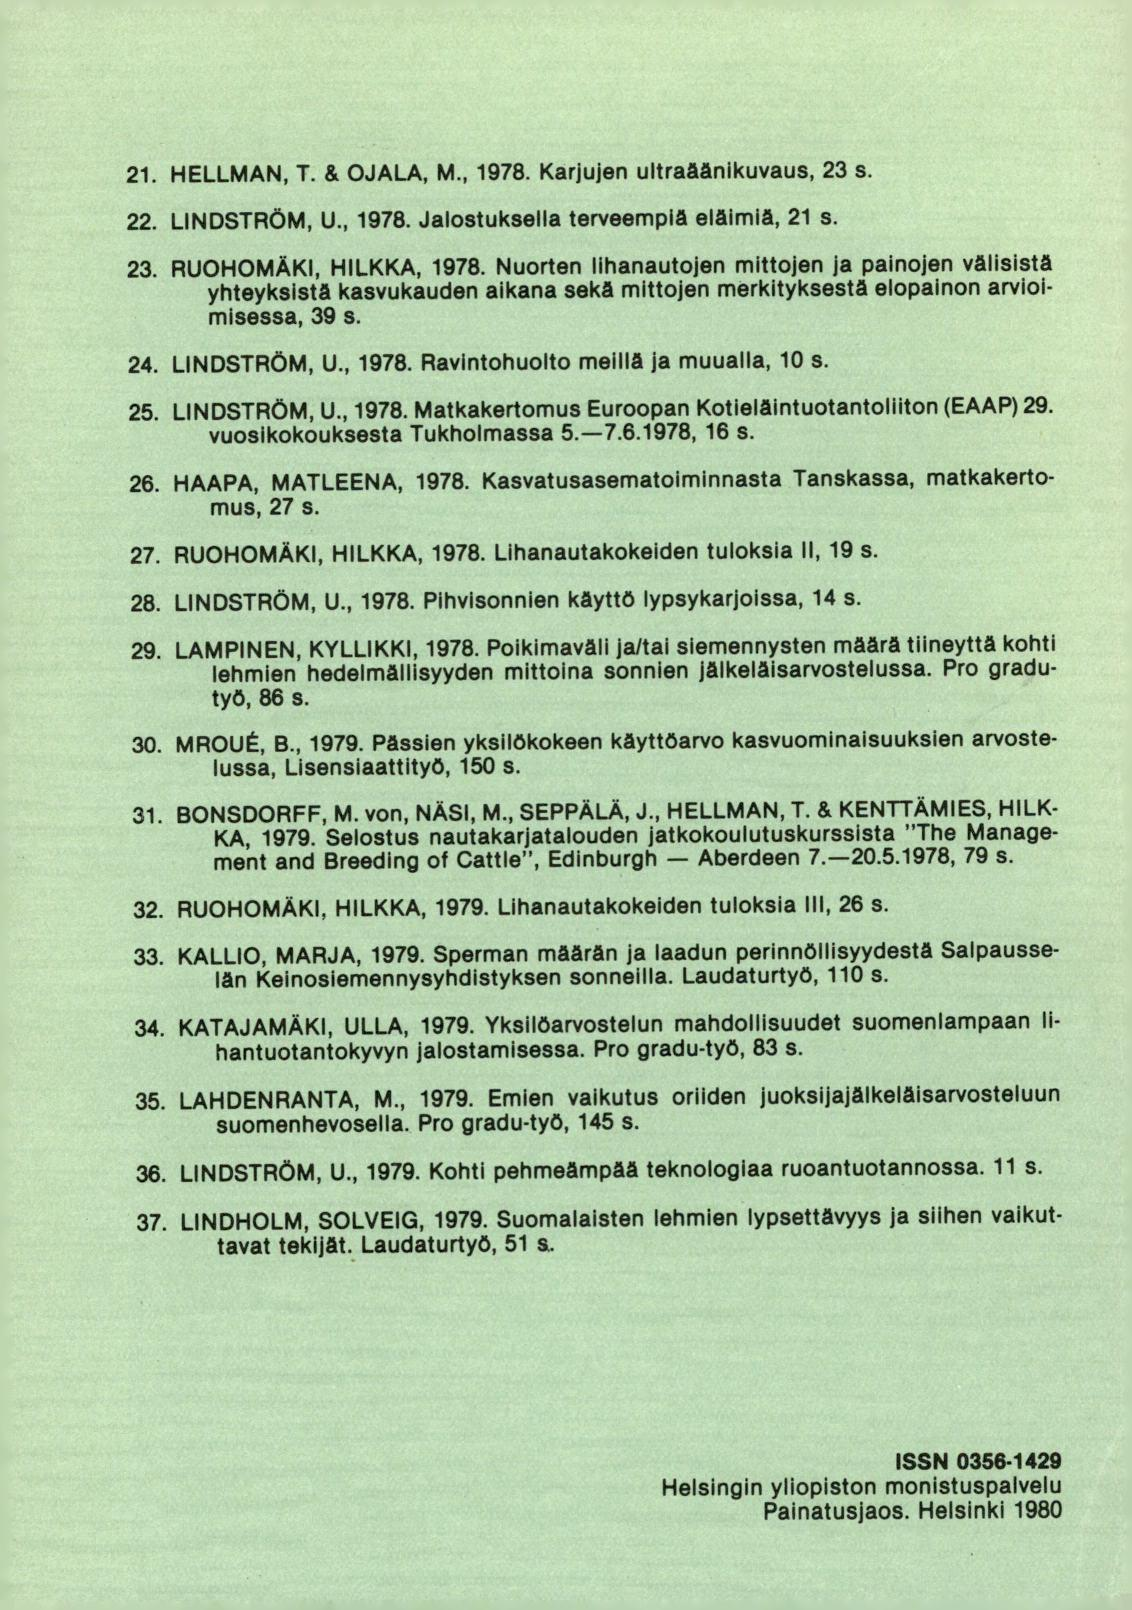 HELLMAN, T. & OJALA, M., 1978. Karjujen ultraåånikuvaus, 23 s. LINDSTRÖM, U., 1978. Jalostuksella terveempiä eläimiä, 21 s. RUOHOMÄKI, HILKKA, 1978.